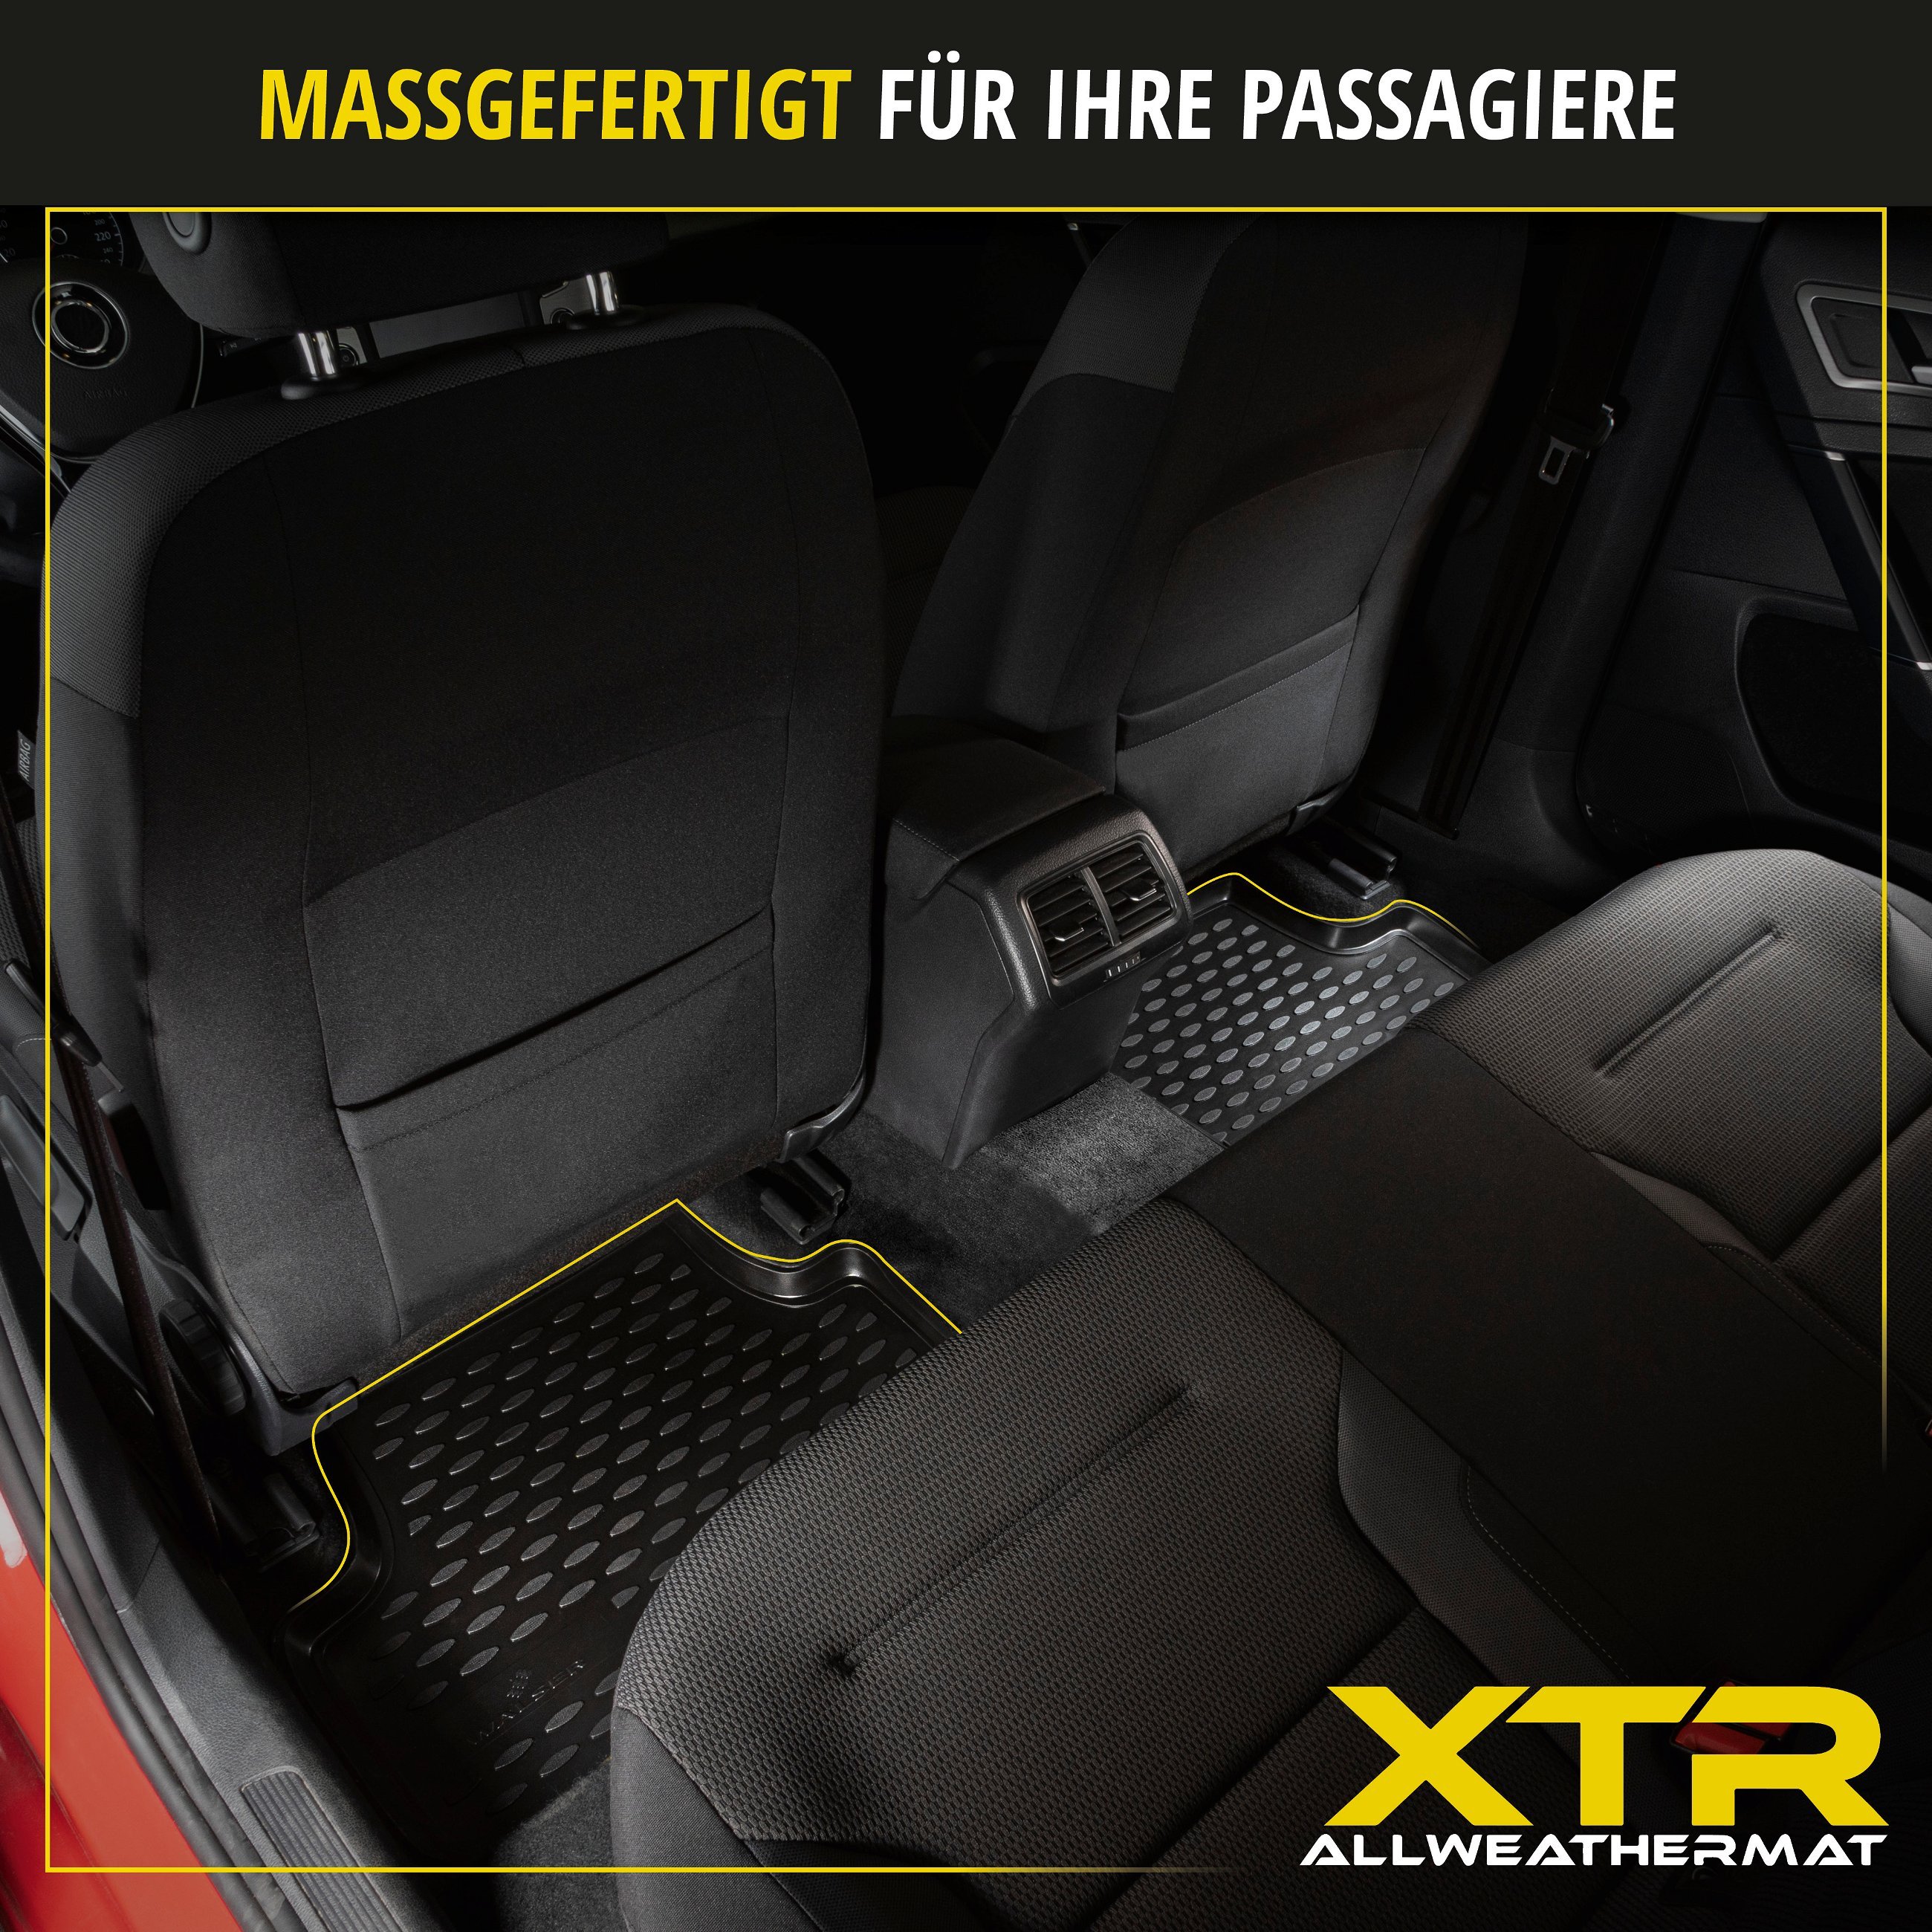 Gummimatten XTR für Audi A6 Limousine 11/2010 - 09/2018, ohne Fach unter Fahrersitz